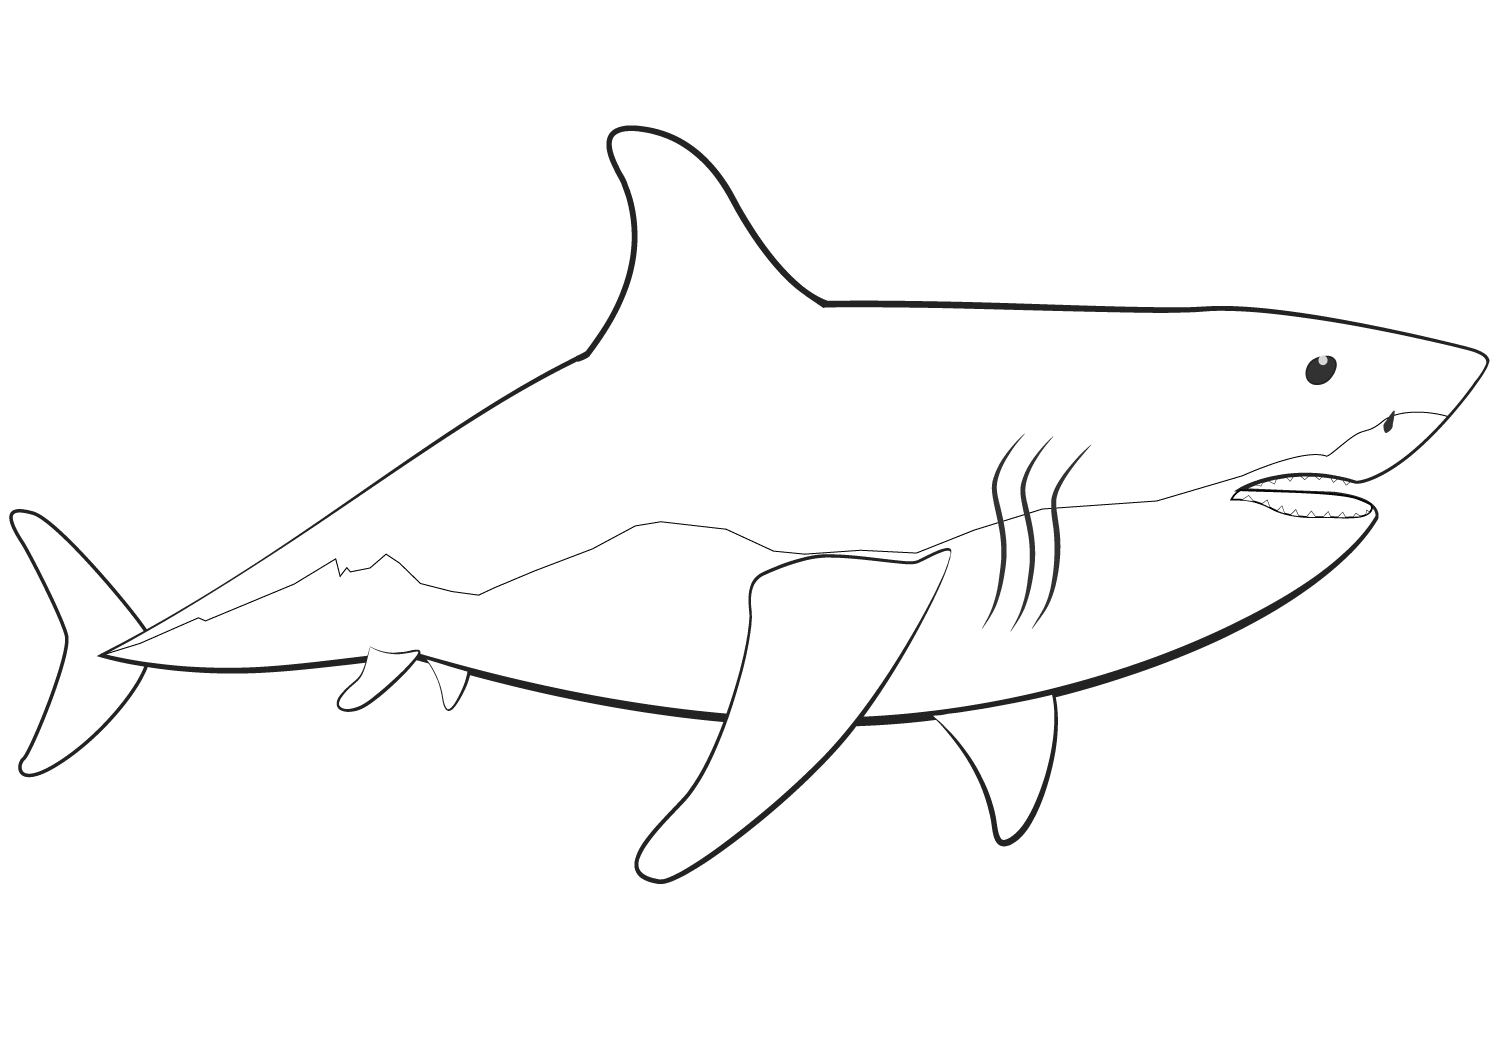 Раскраски акула. Акула раскраска. Распечатка акулы для детей. Белая акула раскраска для детей. Акула трафарет для раскрашивания.